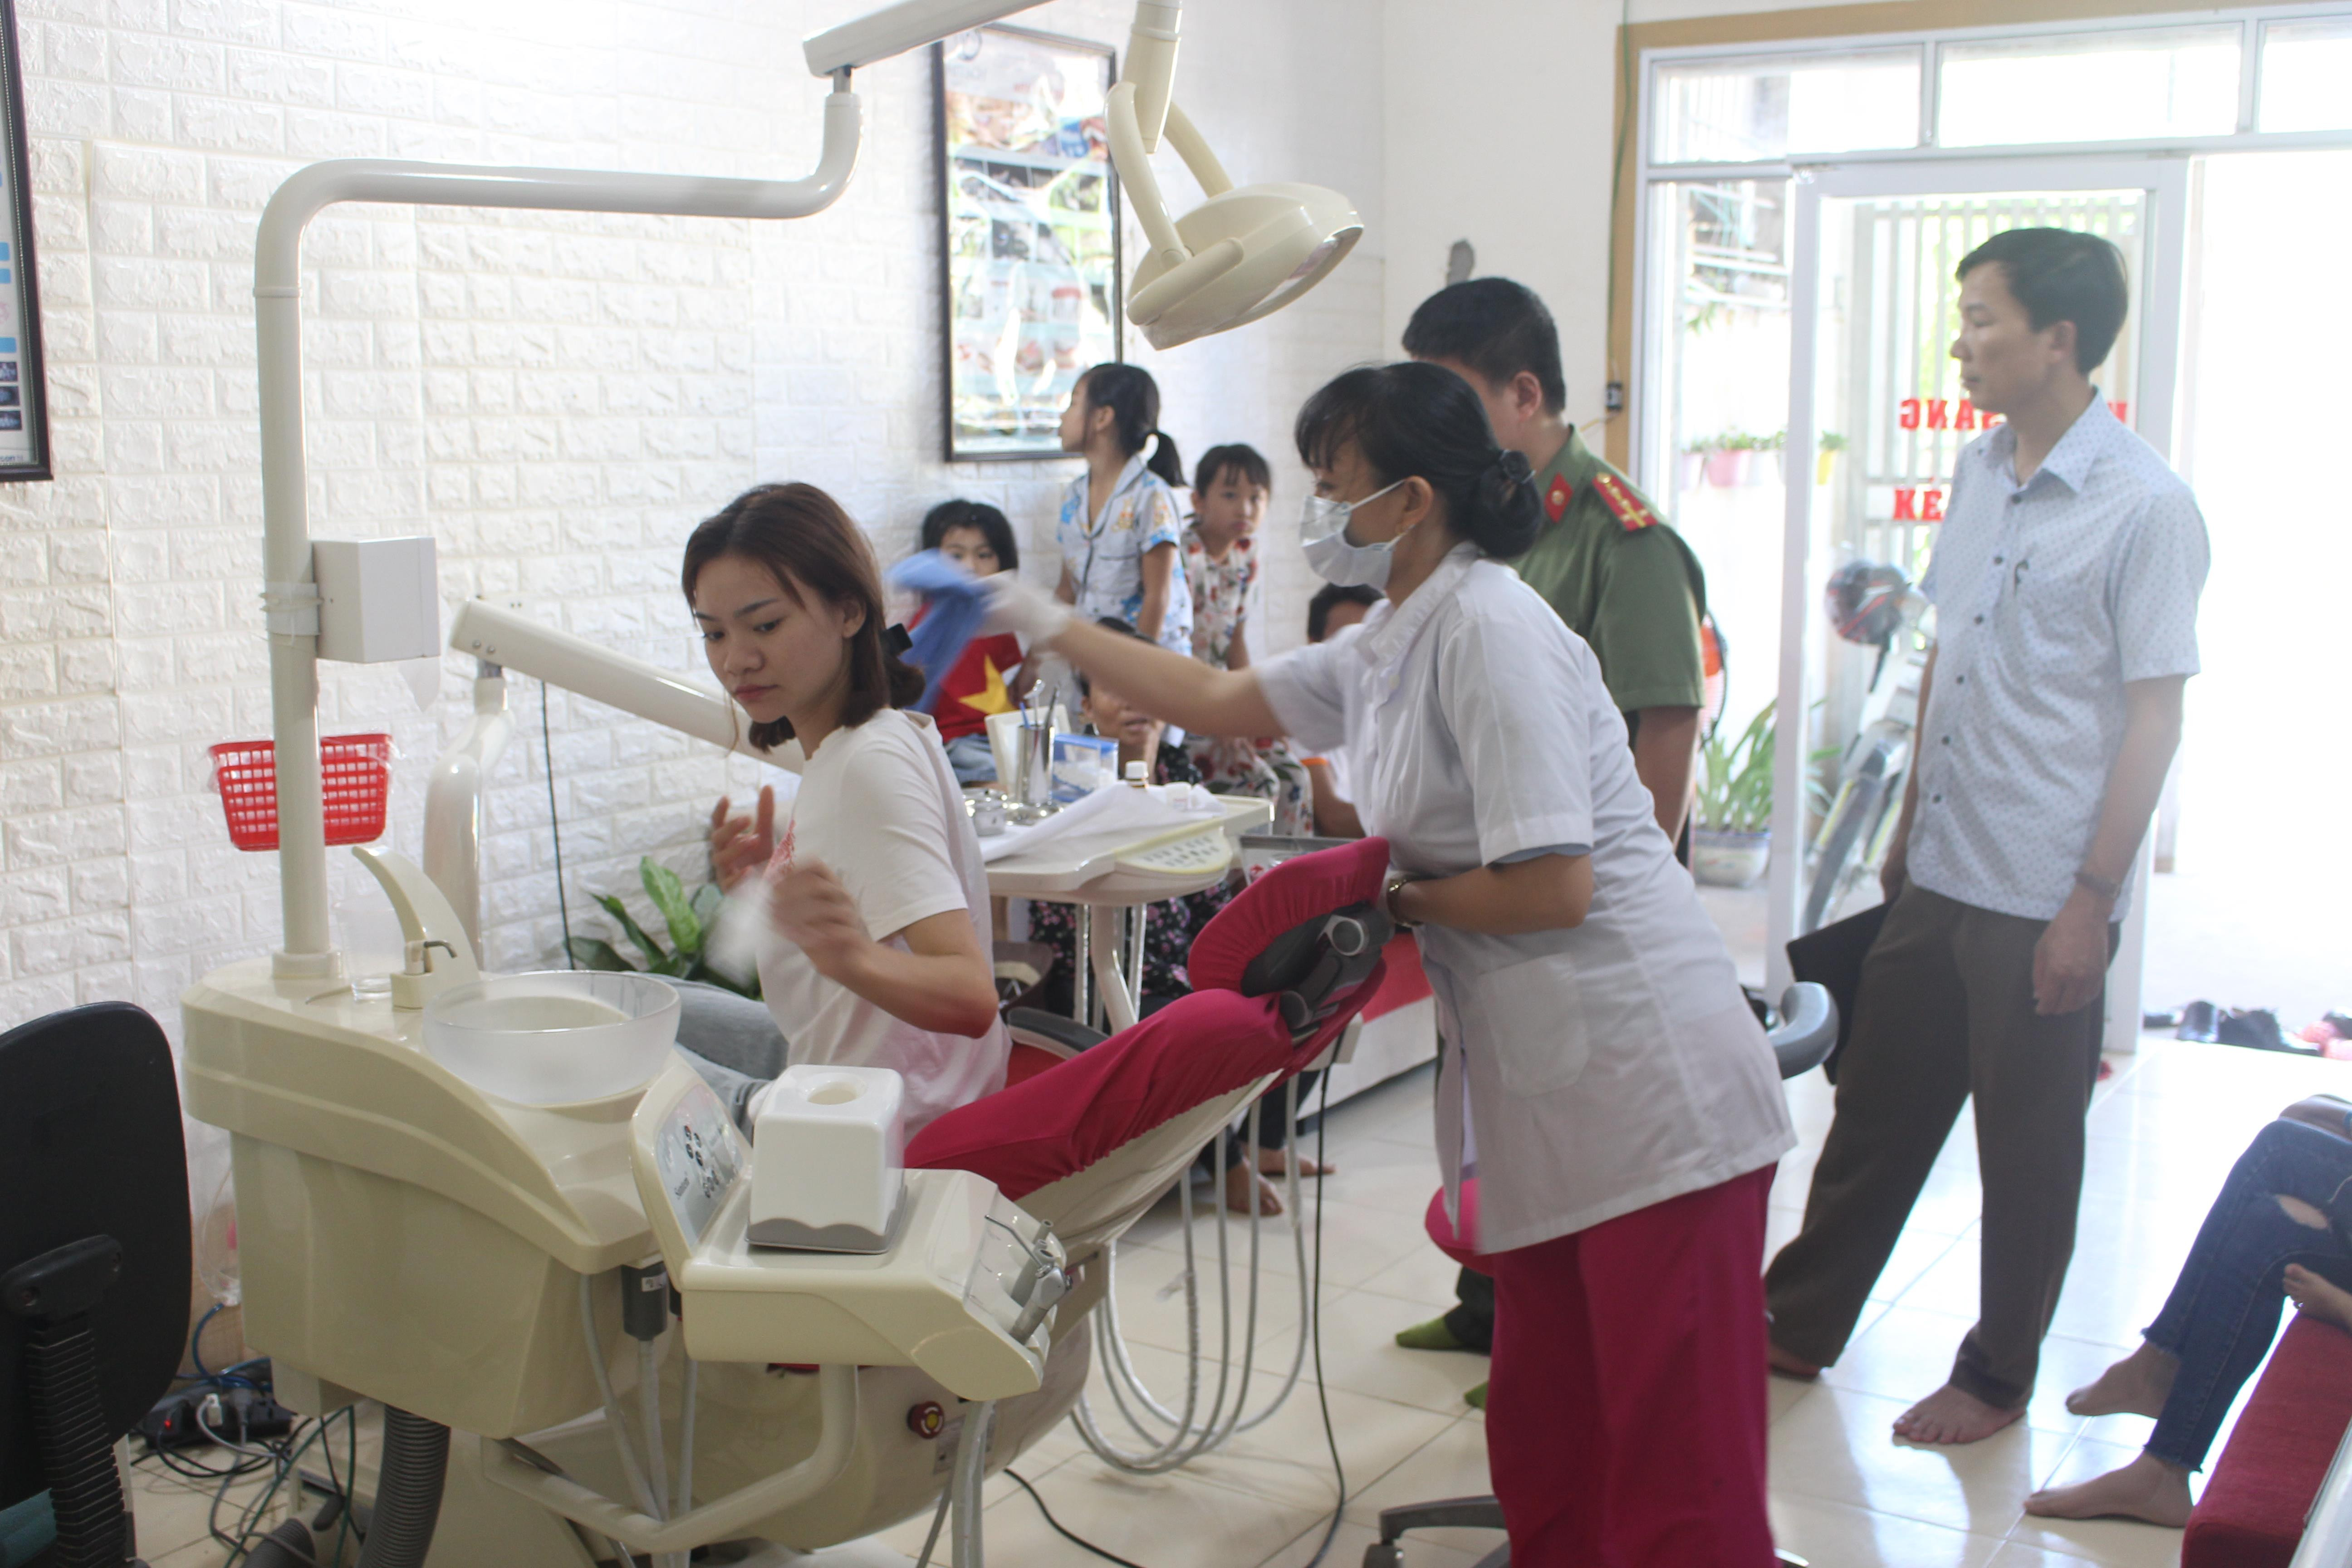 : Đoàn kiểm tra phòng khám nha khoa Nhật Bích của anh Phạm Văn Lâm thôn Tân Xuân, xã Quỳnh Thuận